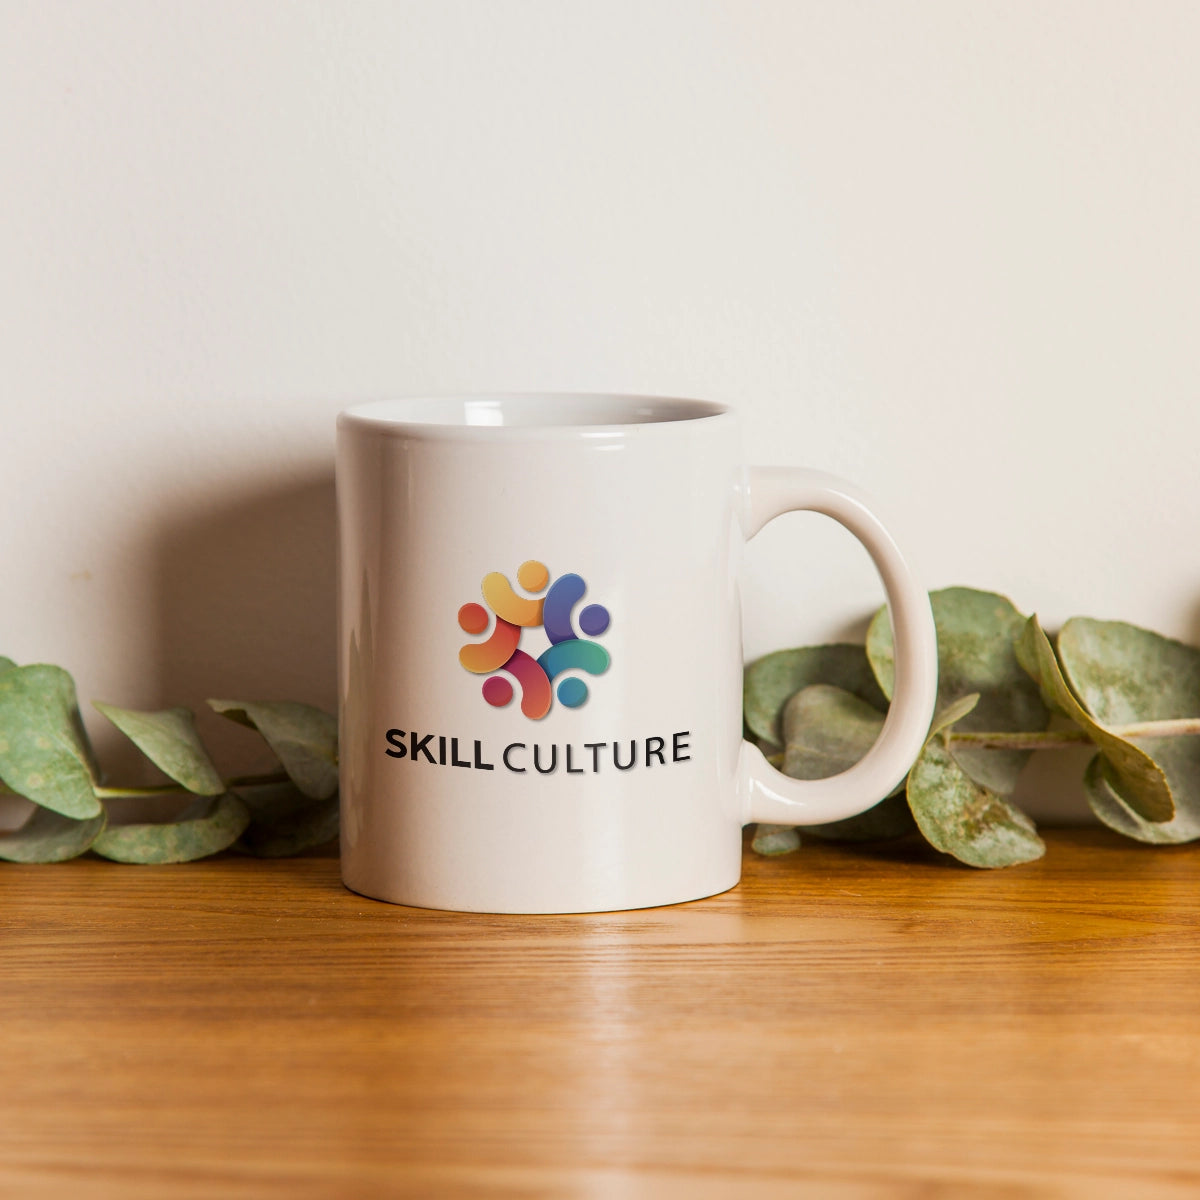 skillculture.com